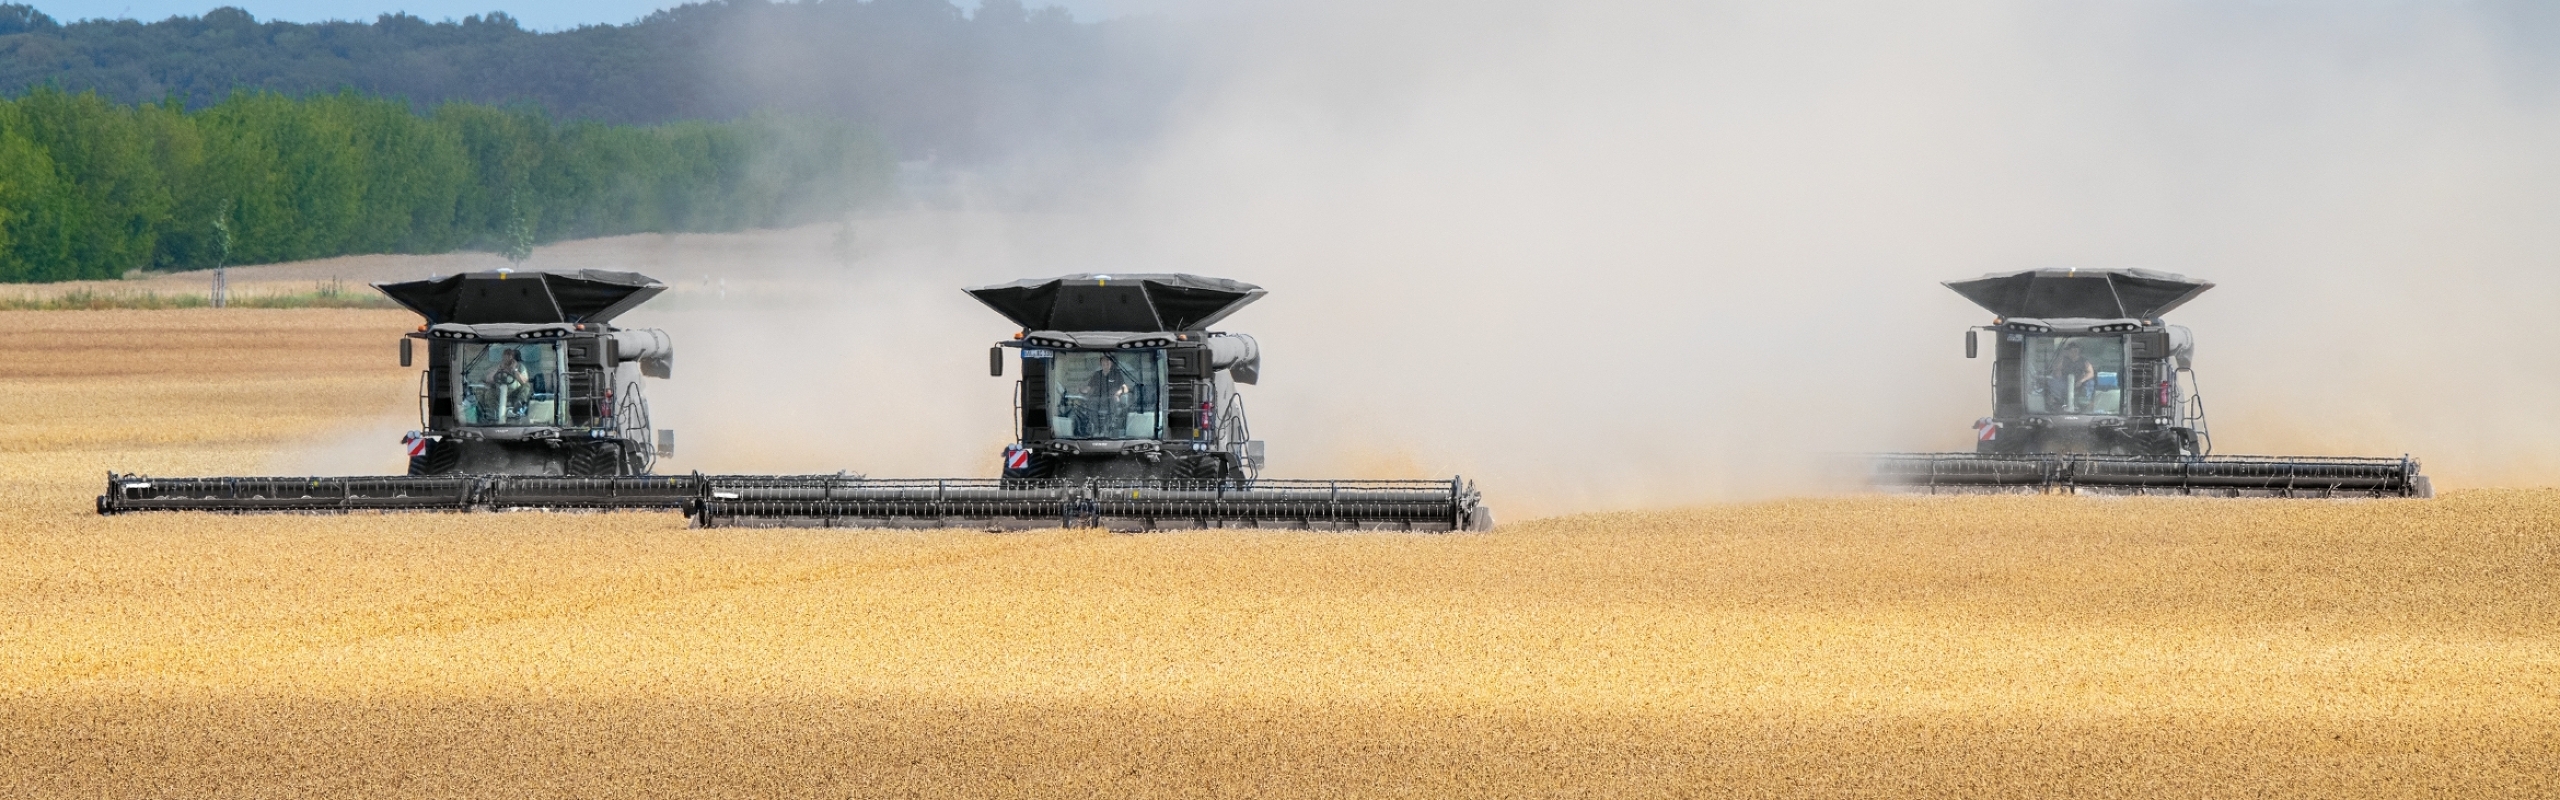 3 моделі Fendt IDEAL рухаються в ряд пшеничним полем